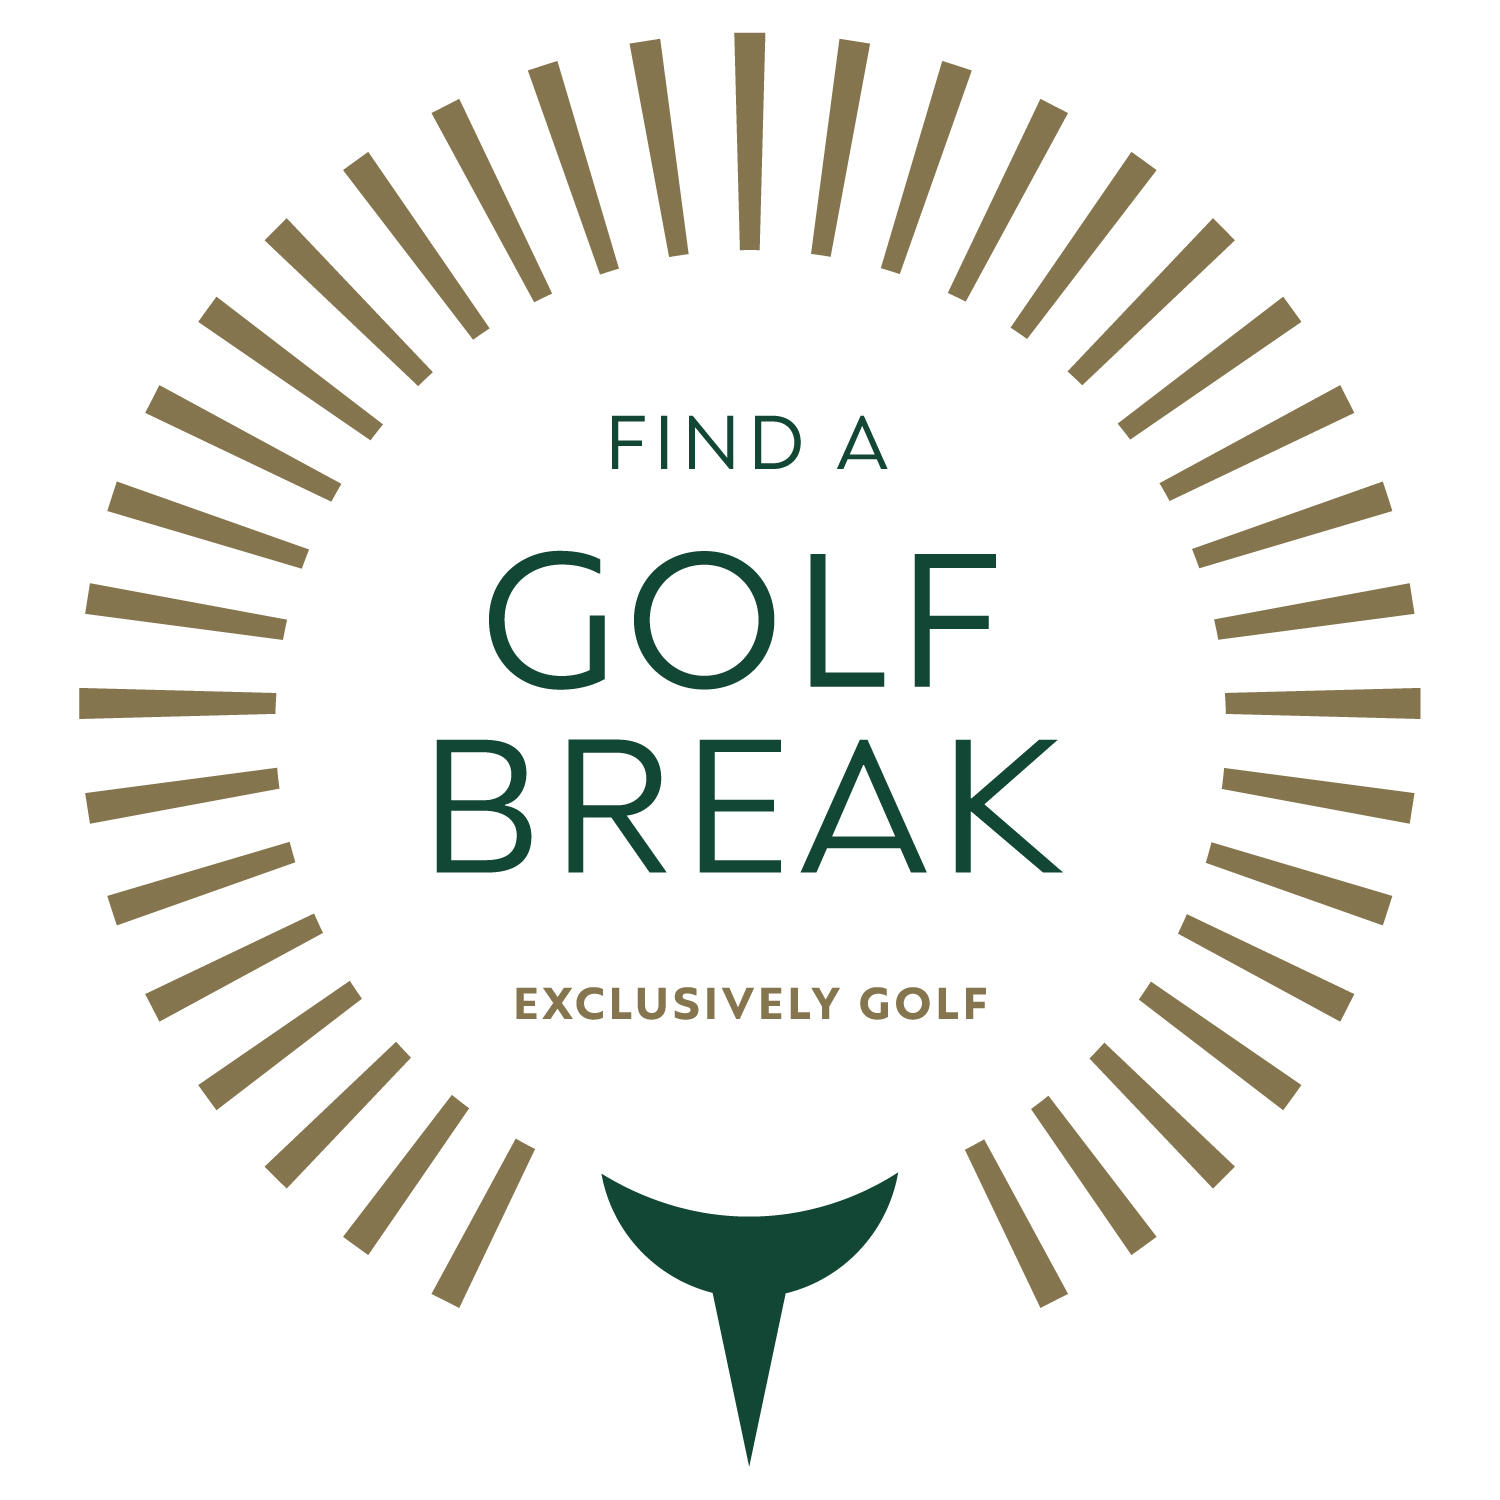 Find a Golf Break